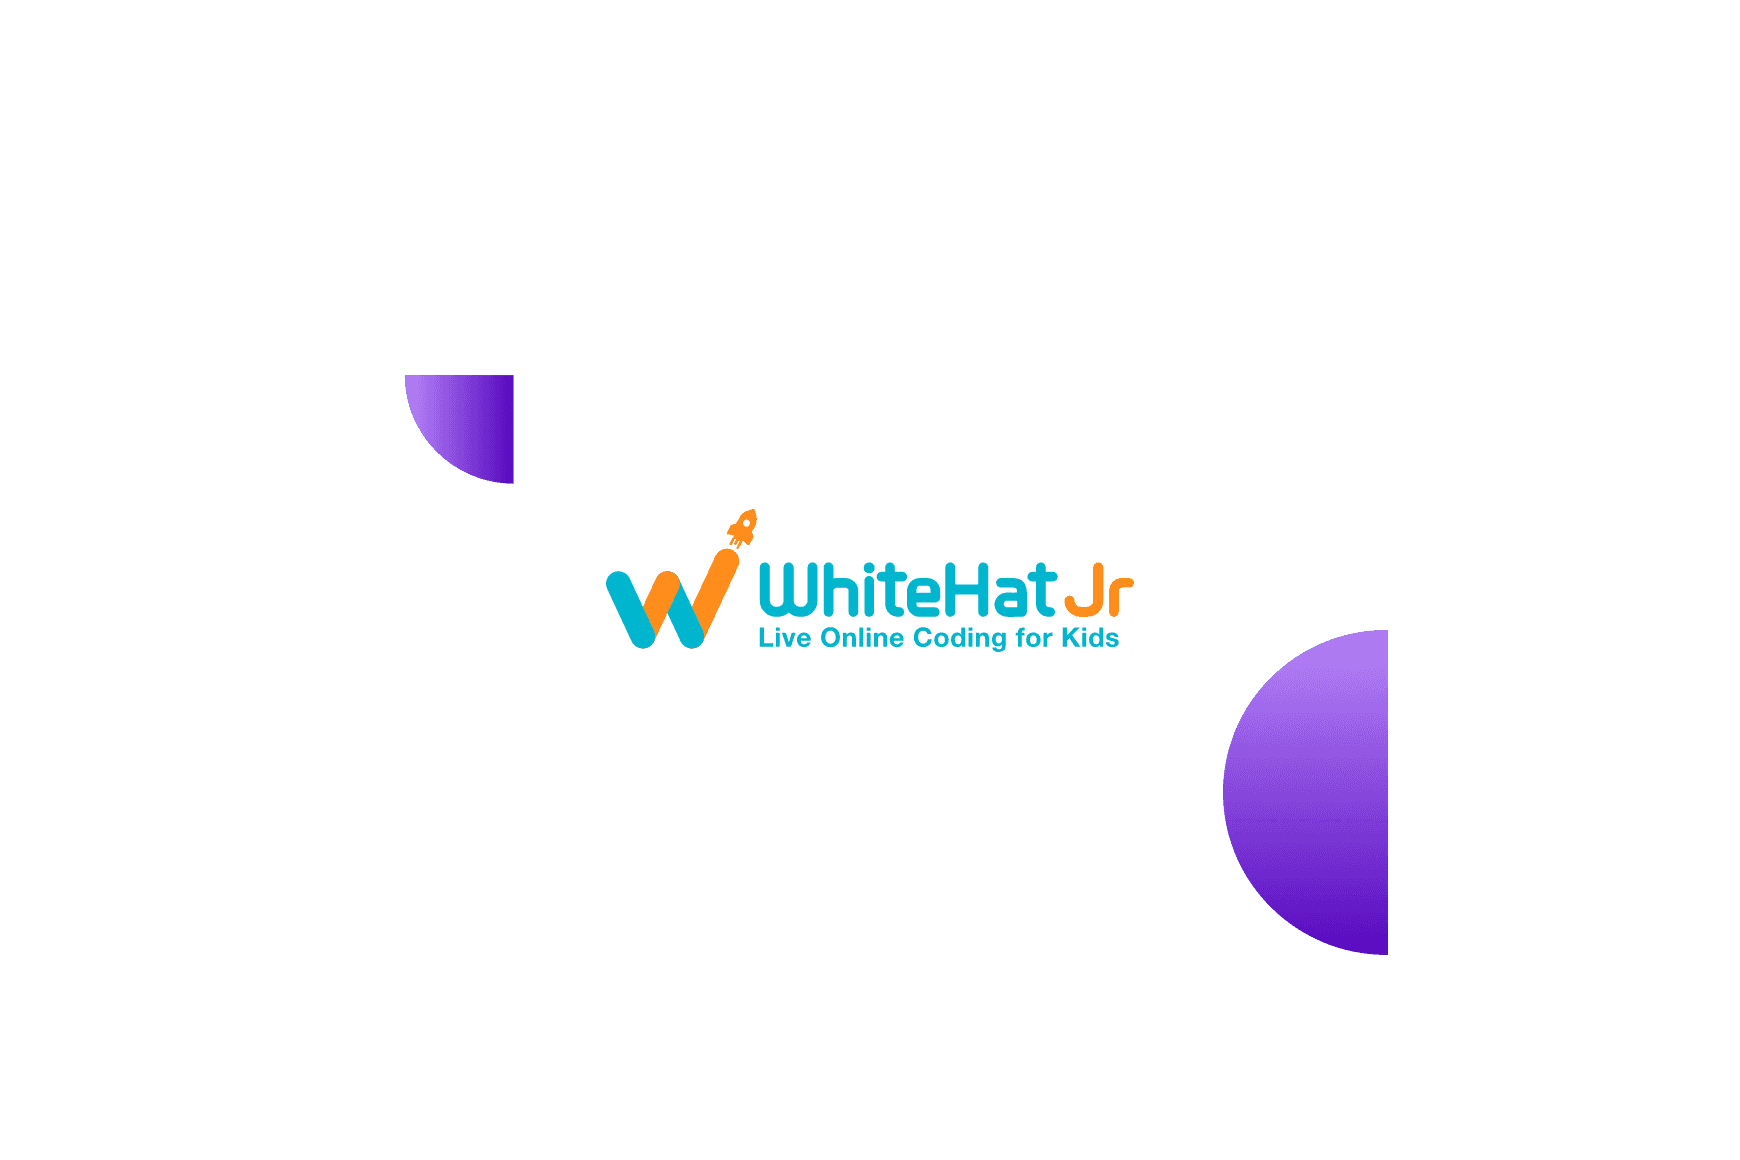 Whitehat Jr Logo Winner Awards